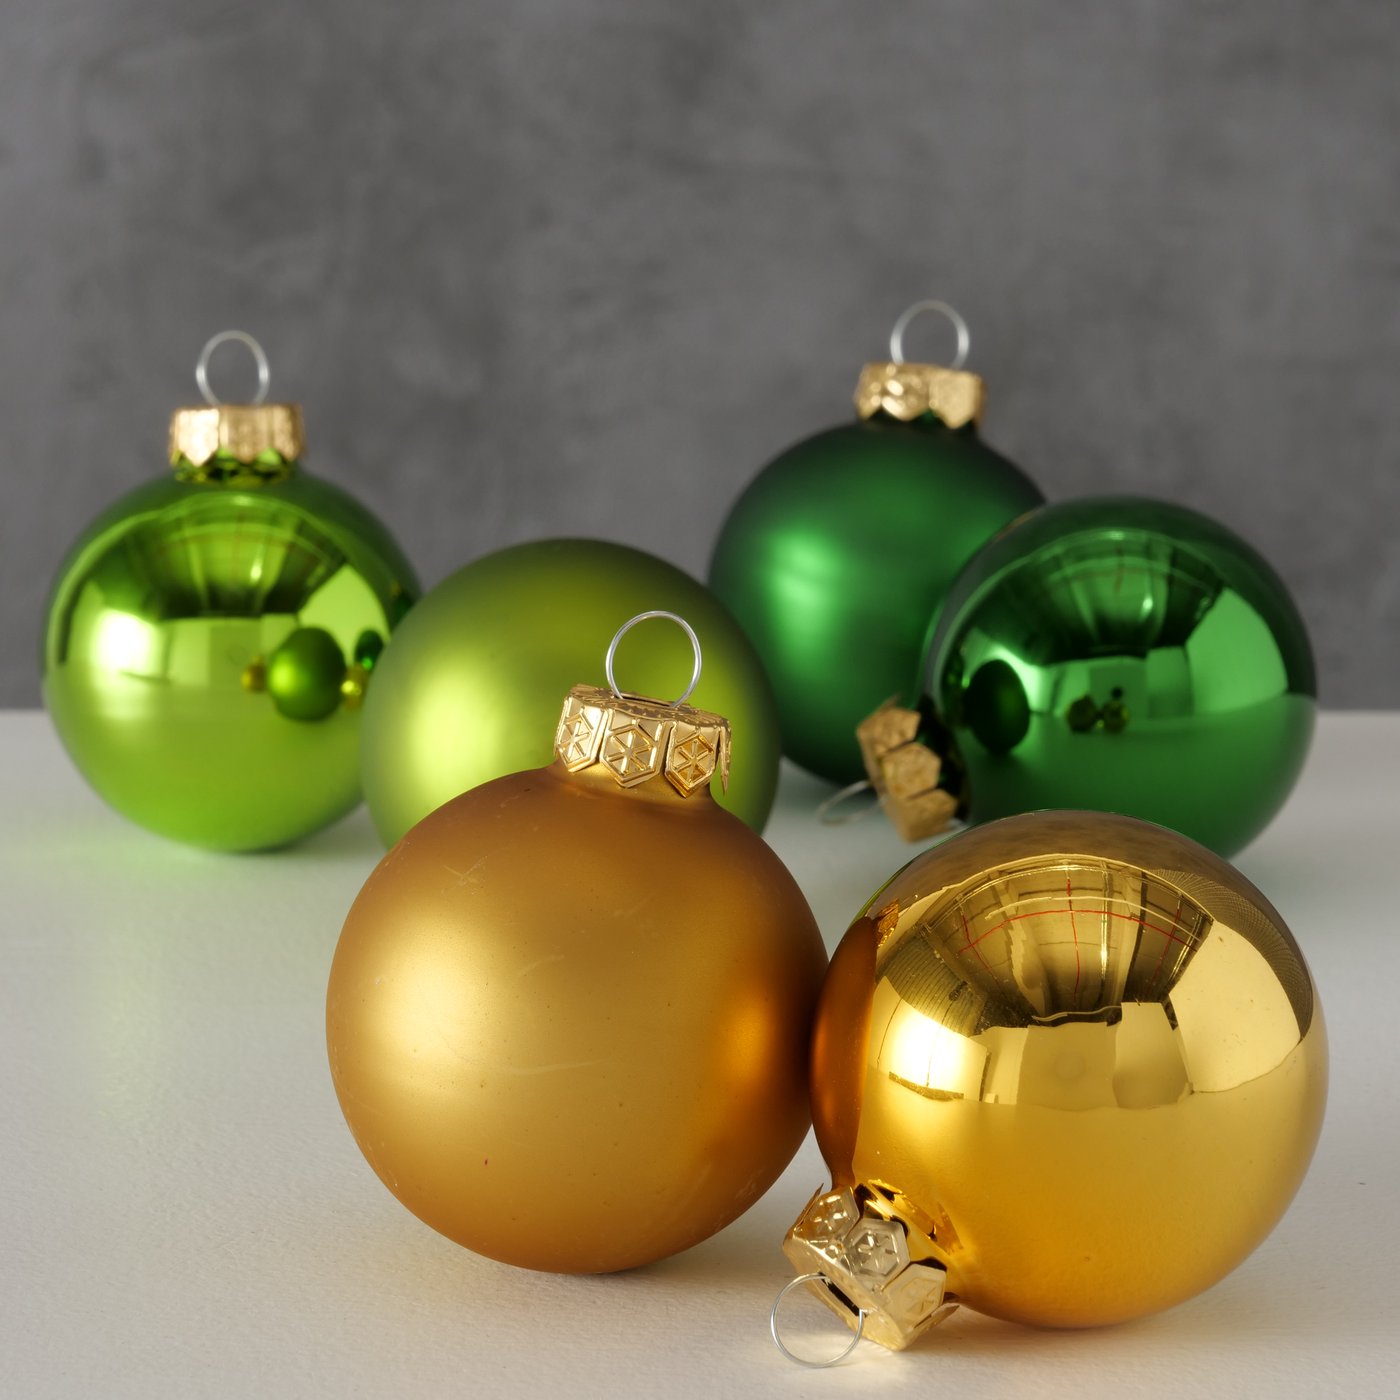 Glas Weihnachtskugel grün gold matt glänzend, 2005128, 4020607794078, Christbaumkugeln, Weihnachtsbaumkugeln